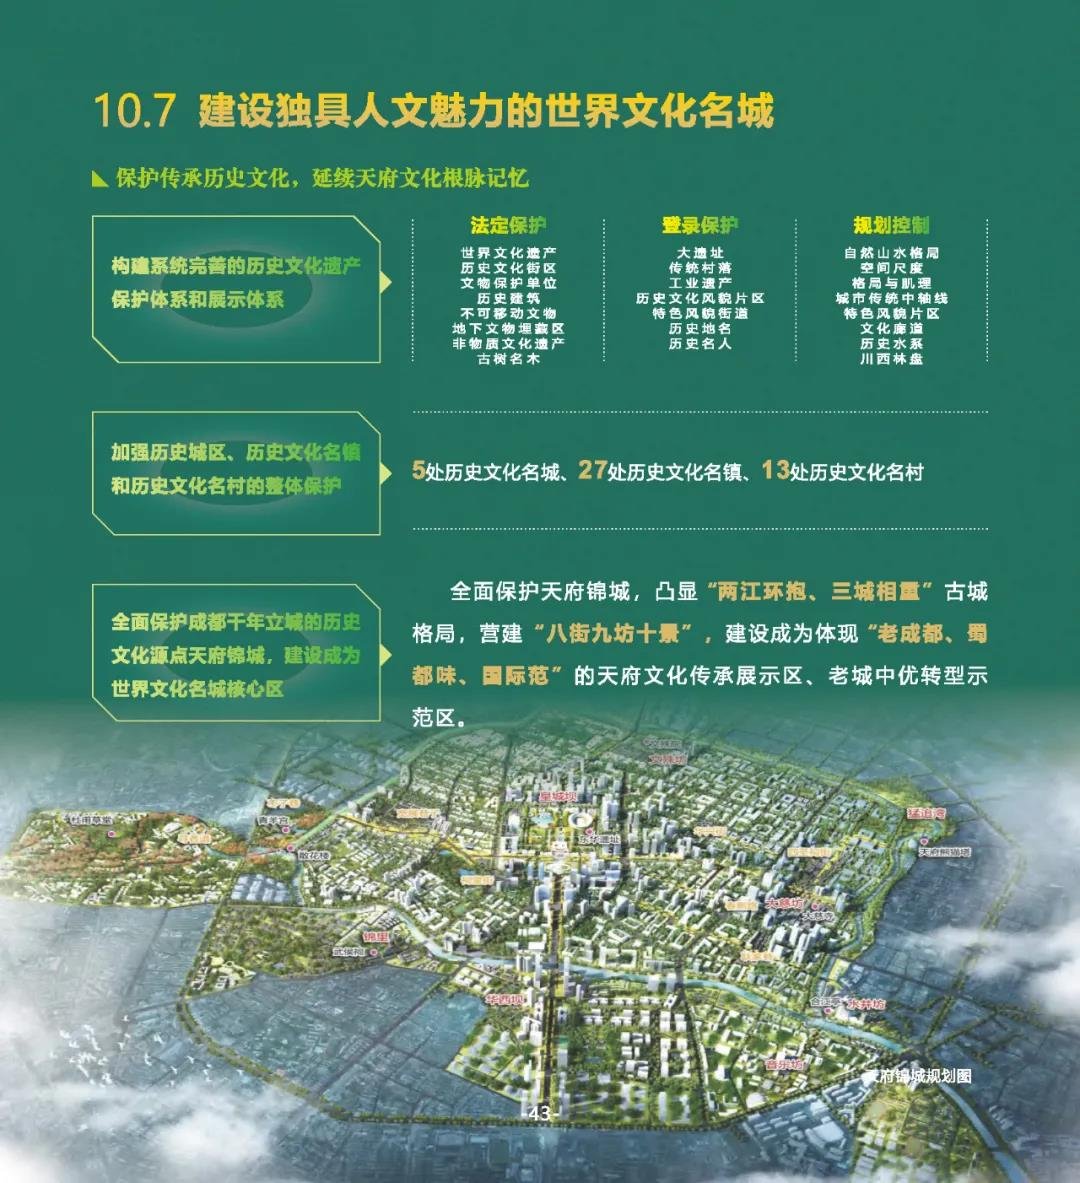 成都市国土空间总体规划（2020-2035年）草案公示